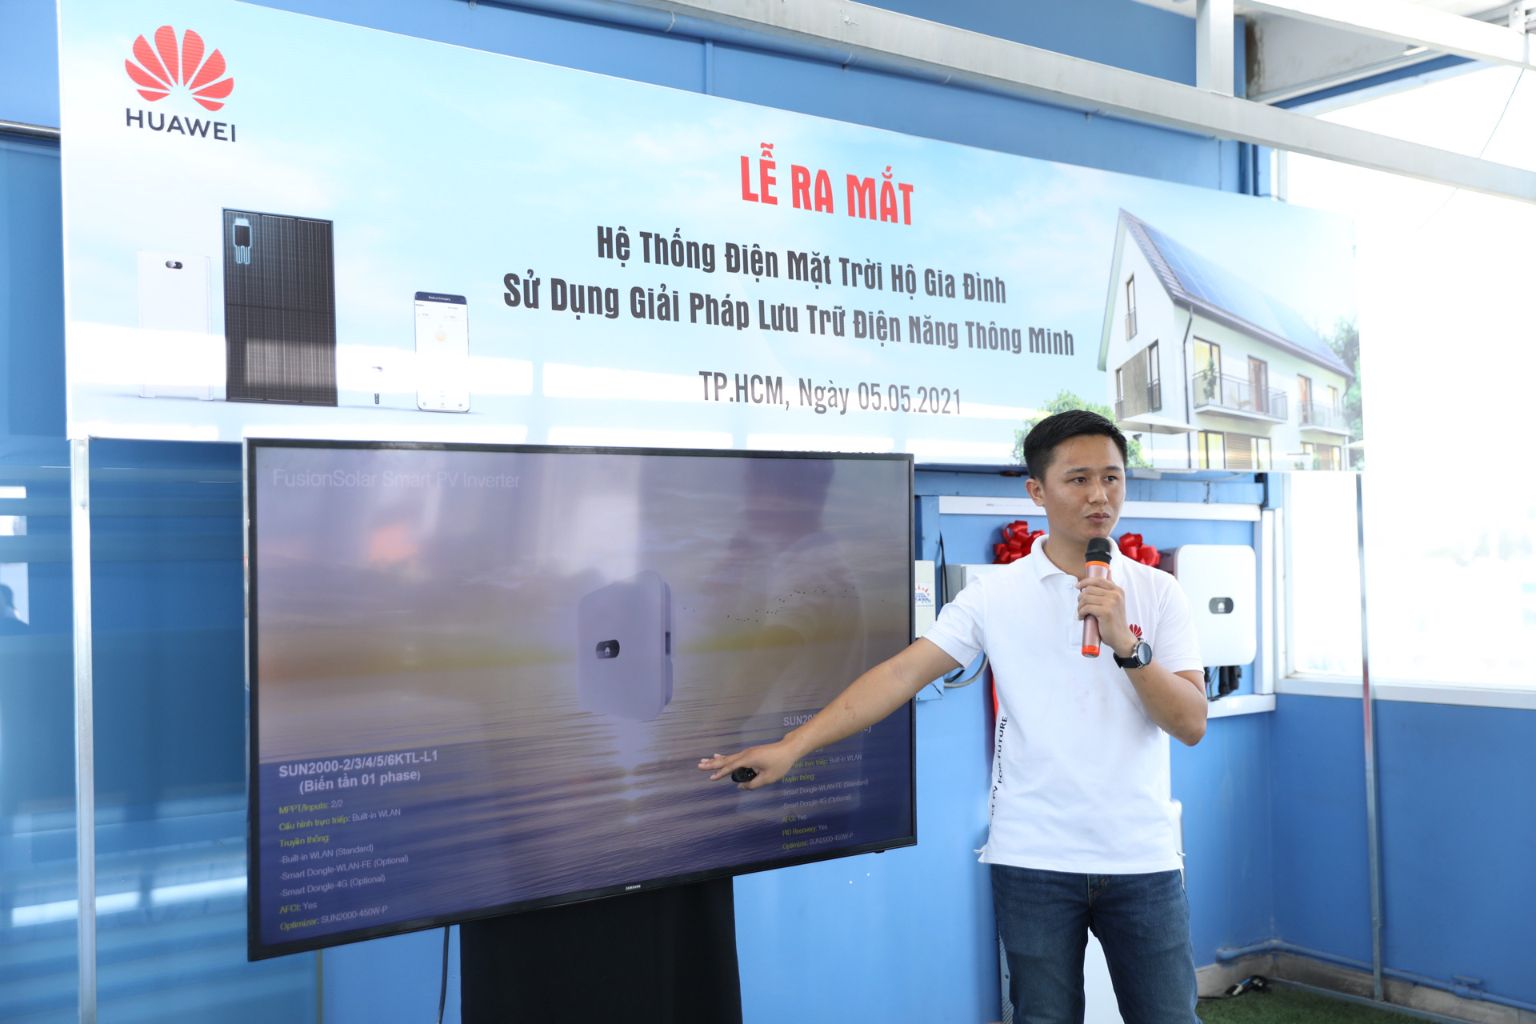 Đại diện Huawei chia sẻ về sản phẩm điện mặt trời của Huawei 1 Huawei ra mắt dự án điện mặt trời áp mái hộ gia đình đầu tiên sử dụng bộ lưu trữ thông minh ở Việt Nam